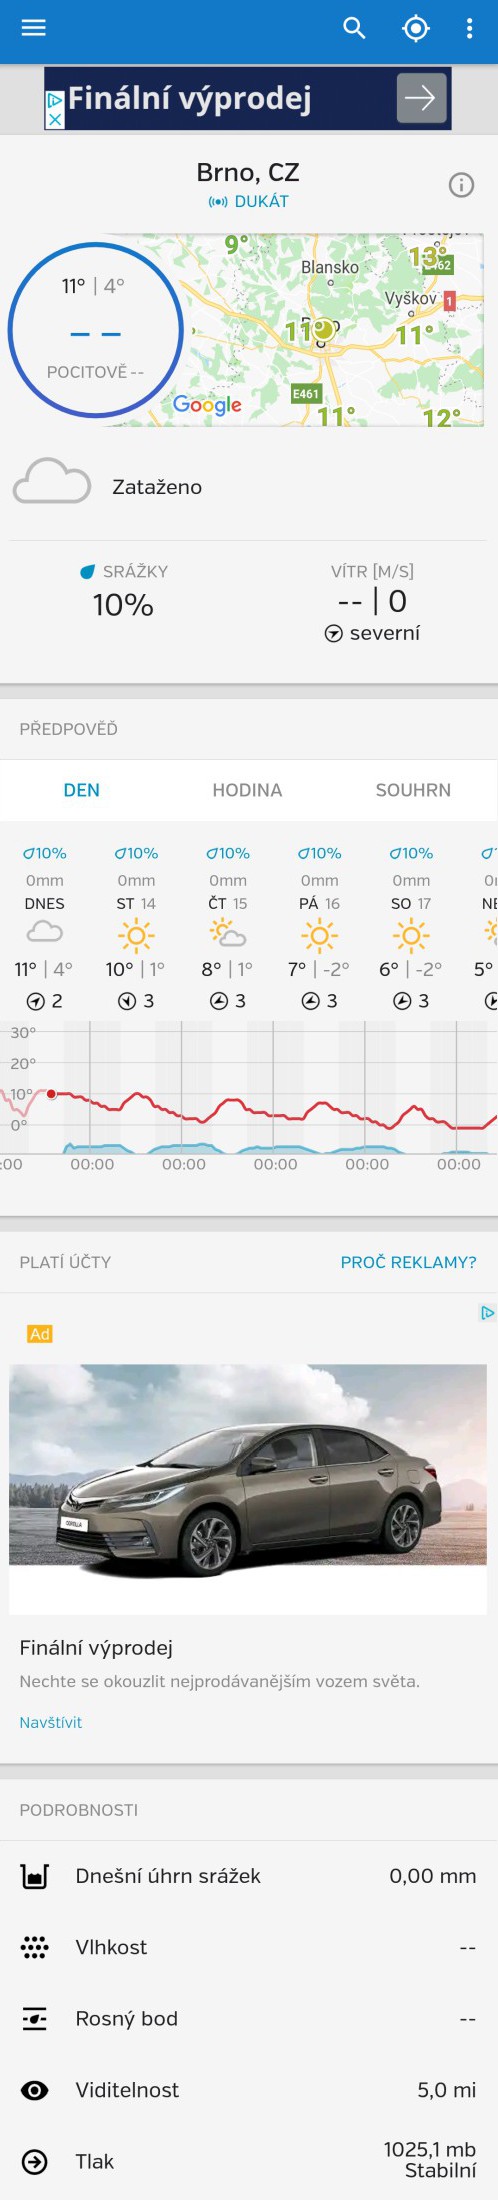 Garni 1055 - mobilní aplikace Weather Underground Forecast pro Android